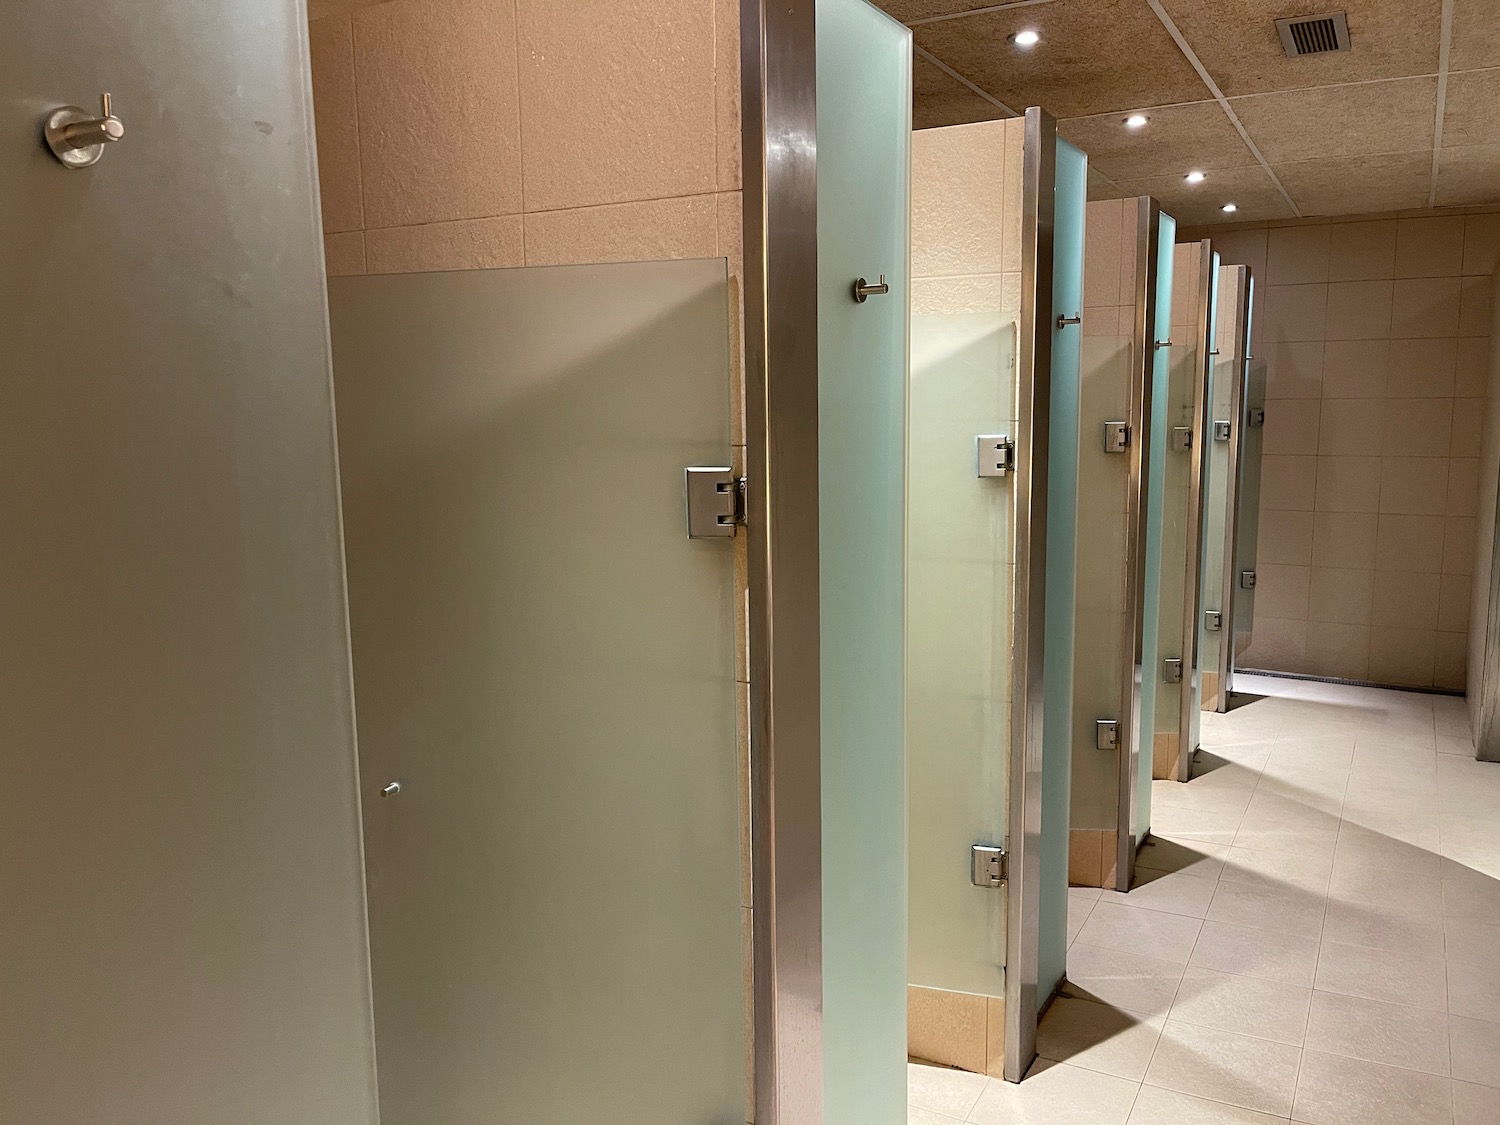 a row of doors in a bathroom